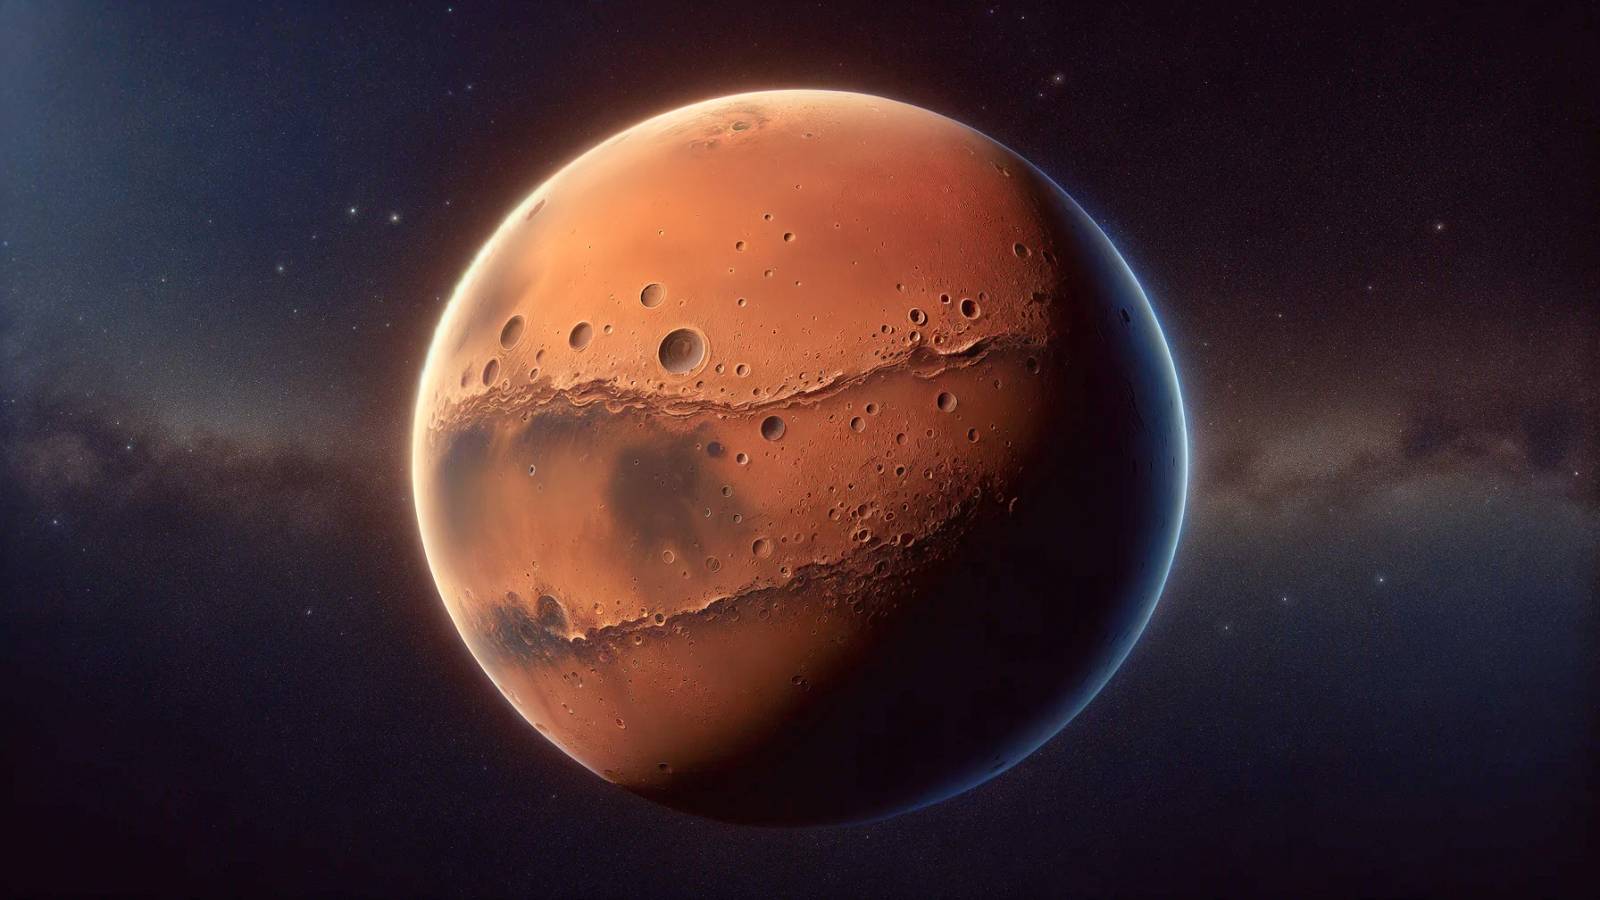 ESA kündigt unglaubliche Entdeckung auf dem Mars dank der Mars-Express-Sonde an